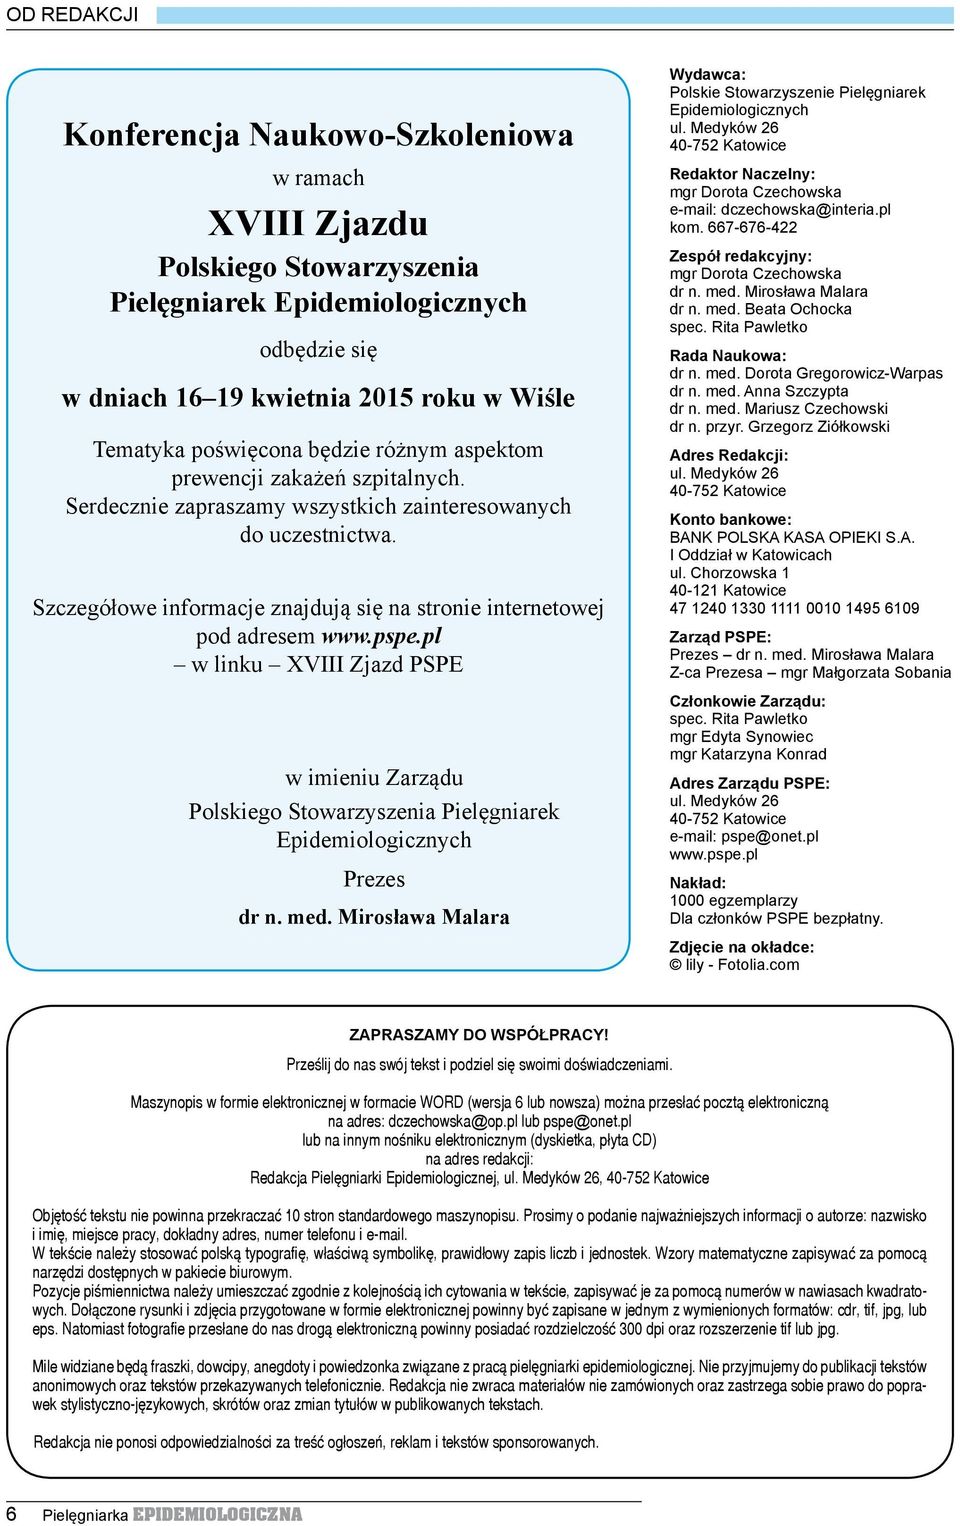 pspe.pl w linku XVIII Zjazd PSPE w imieniu Zarządu Polskiego Stowarzyszenia Pielęgniarek Epidemiologicznych Prezes dr n. med.